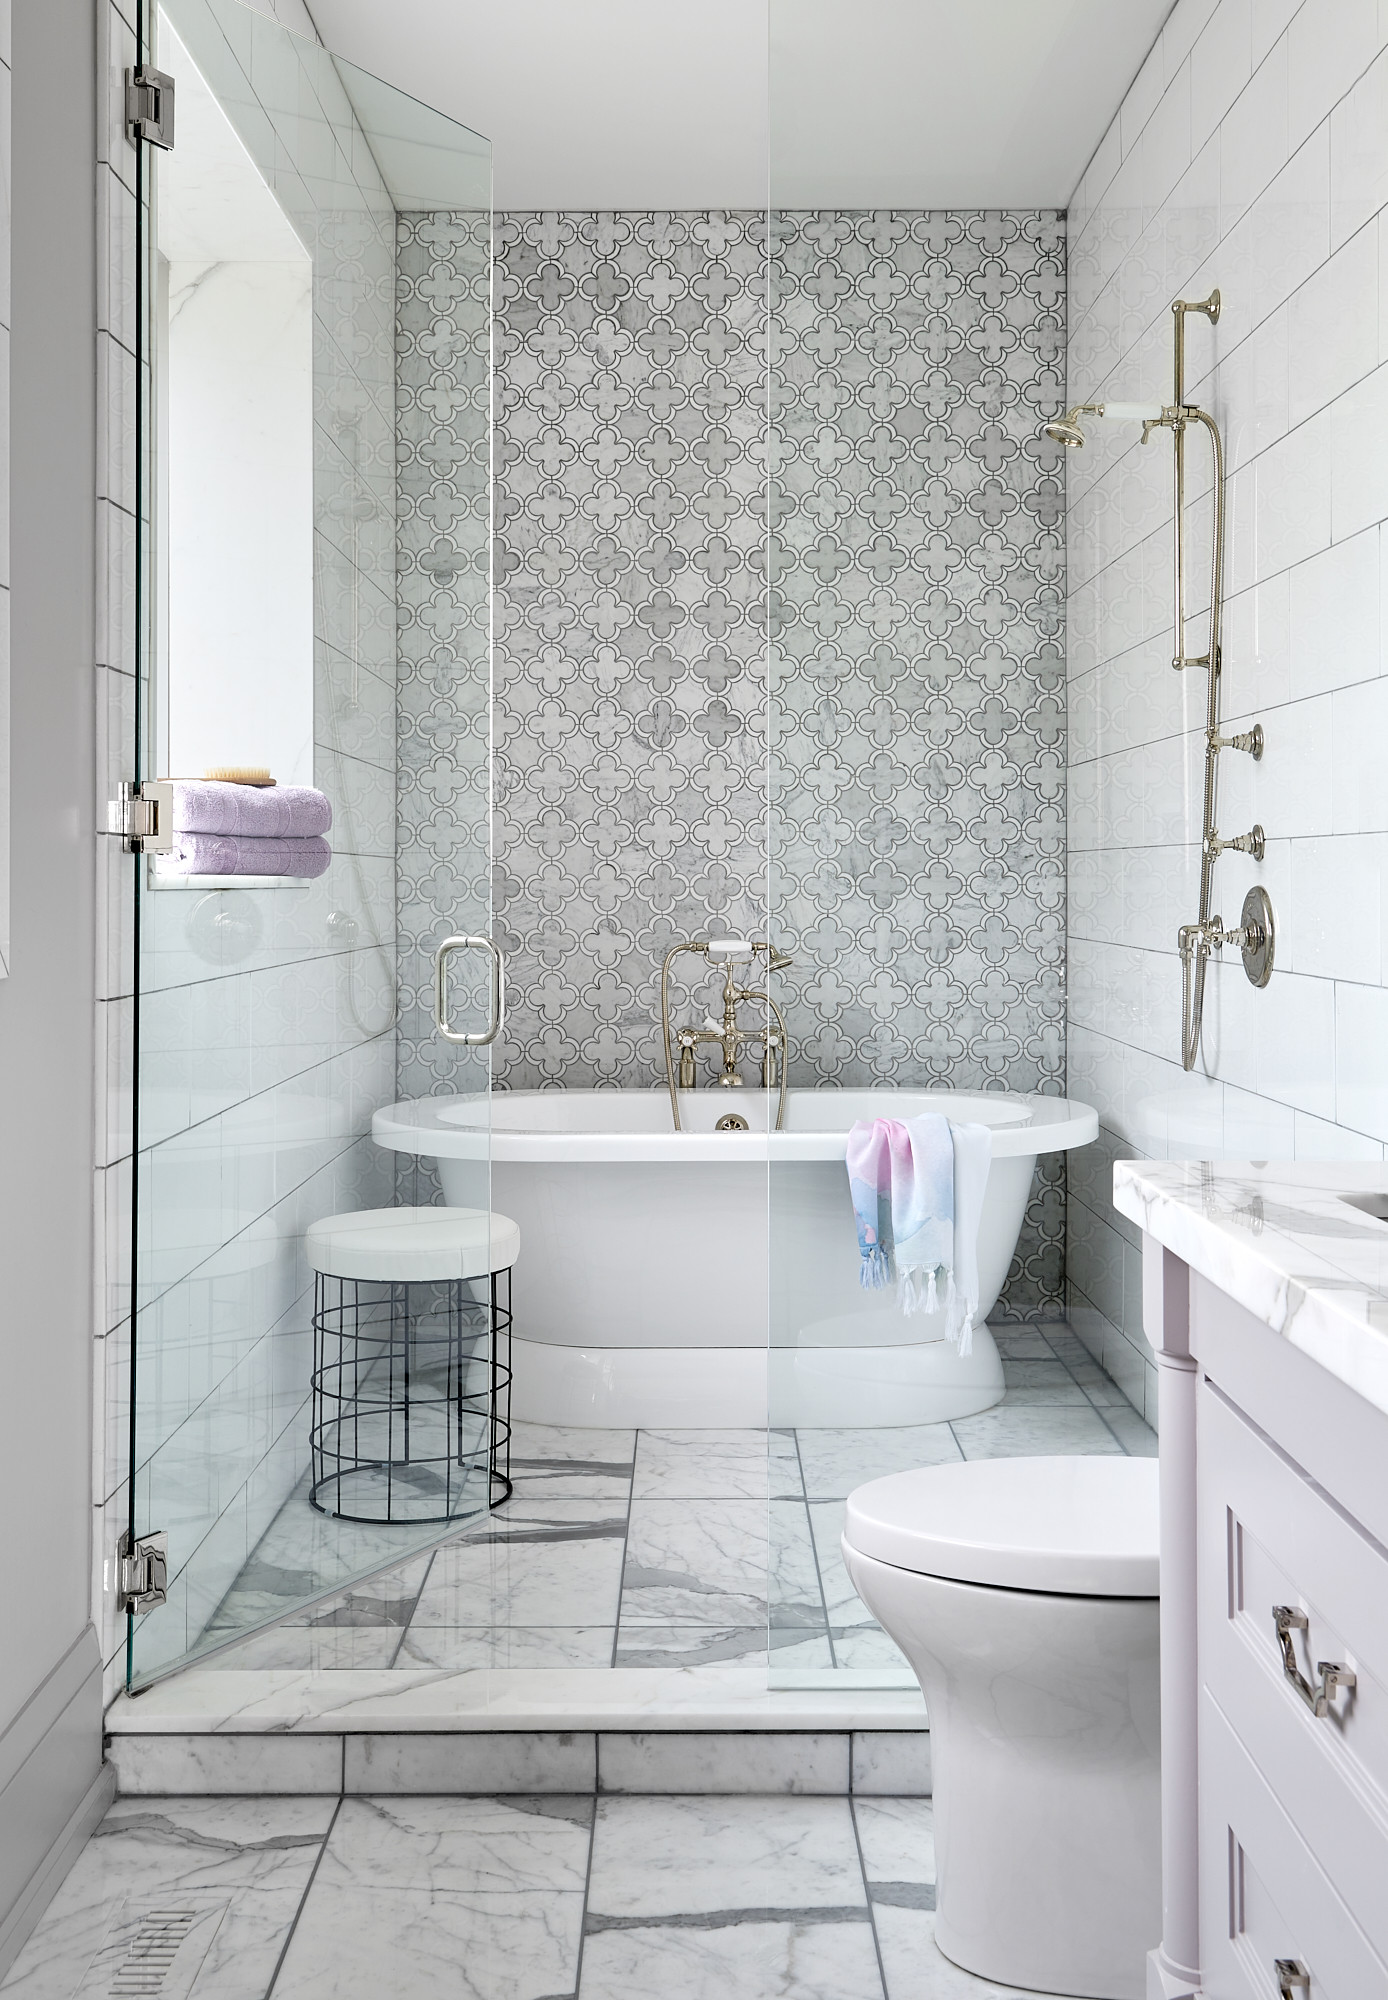 Elegant Gray Herringbone Floor in Bathroom